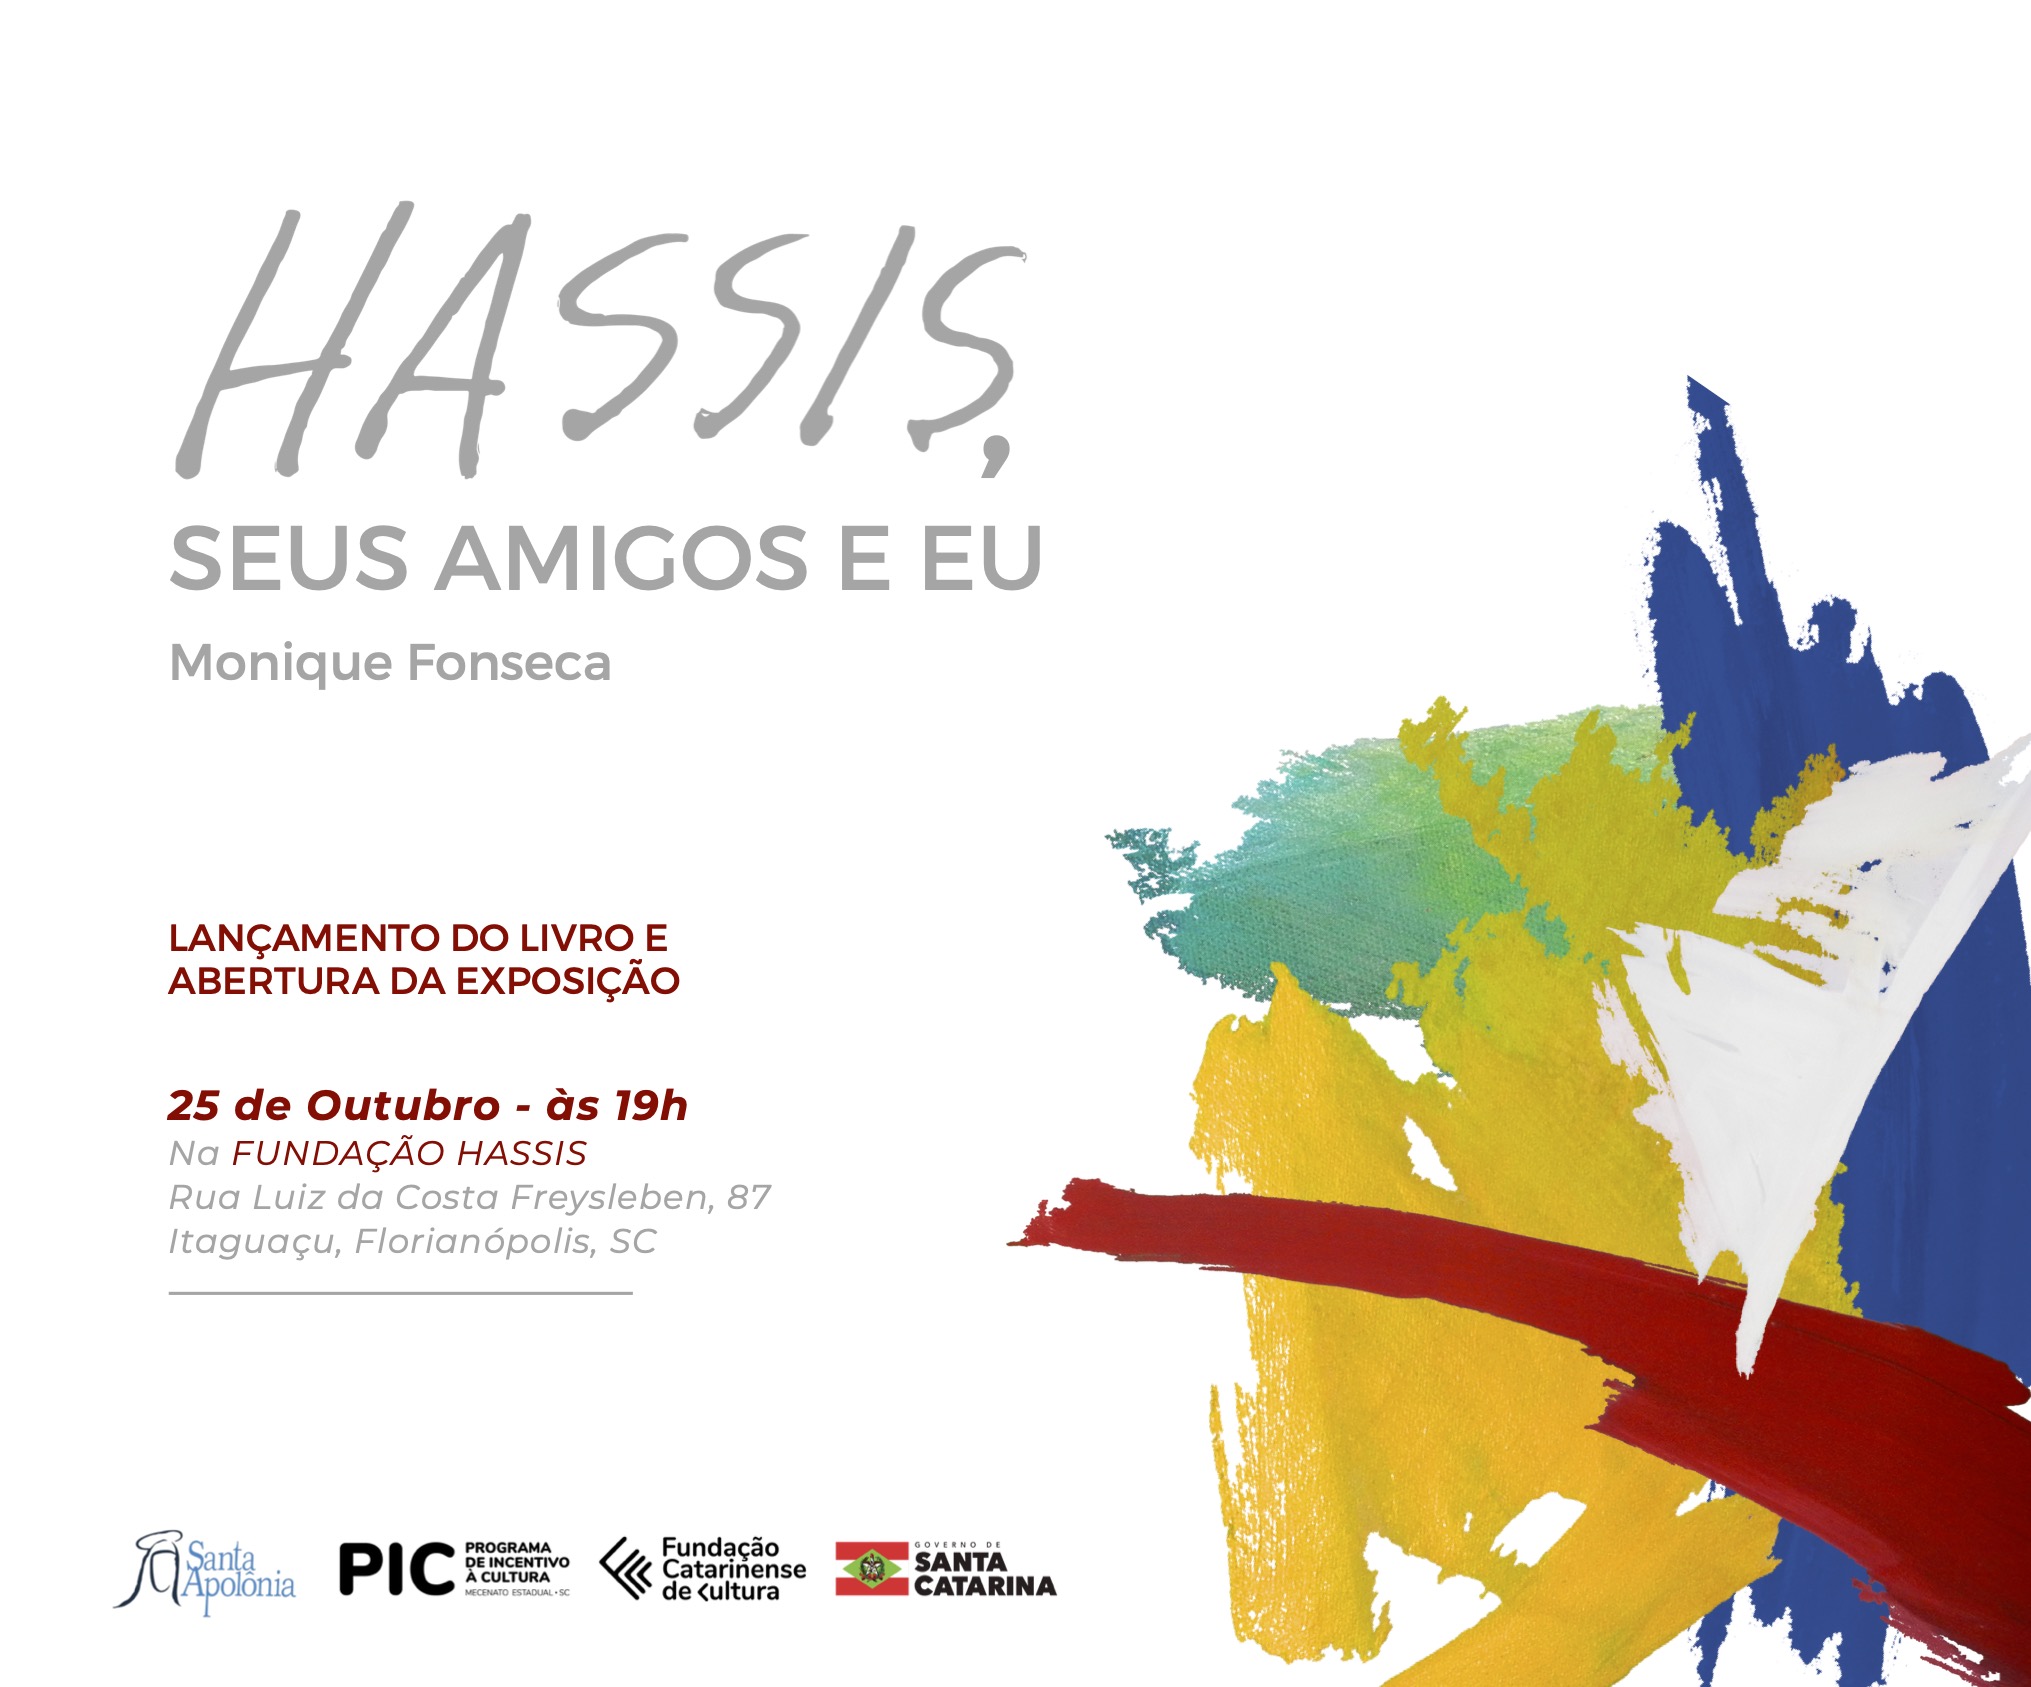 Convite exposição e lançamento do livro “Hassis, seus amigos e eu”, de Monique Fonseca. 25 de outubro de 2023 às 19h na Fundação Hassis - Rua Luiza das Costa Freysleben, 87, Itaguaçu, Florianópolis